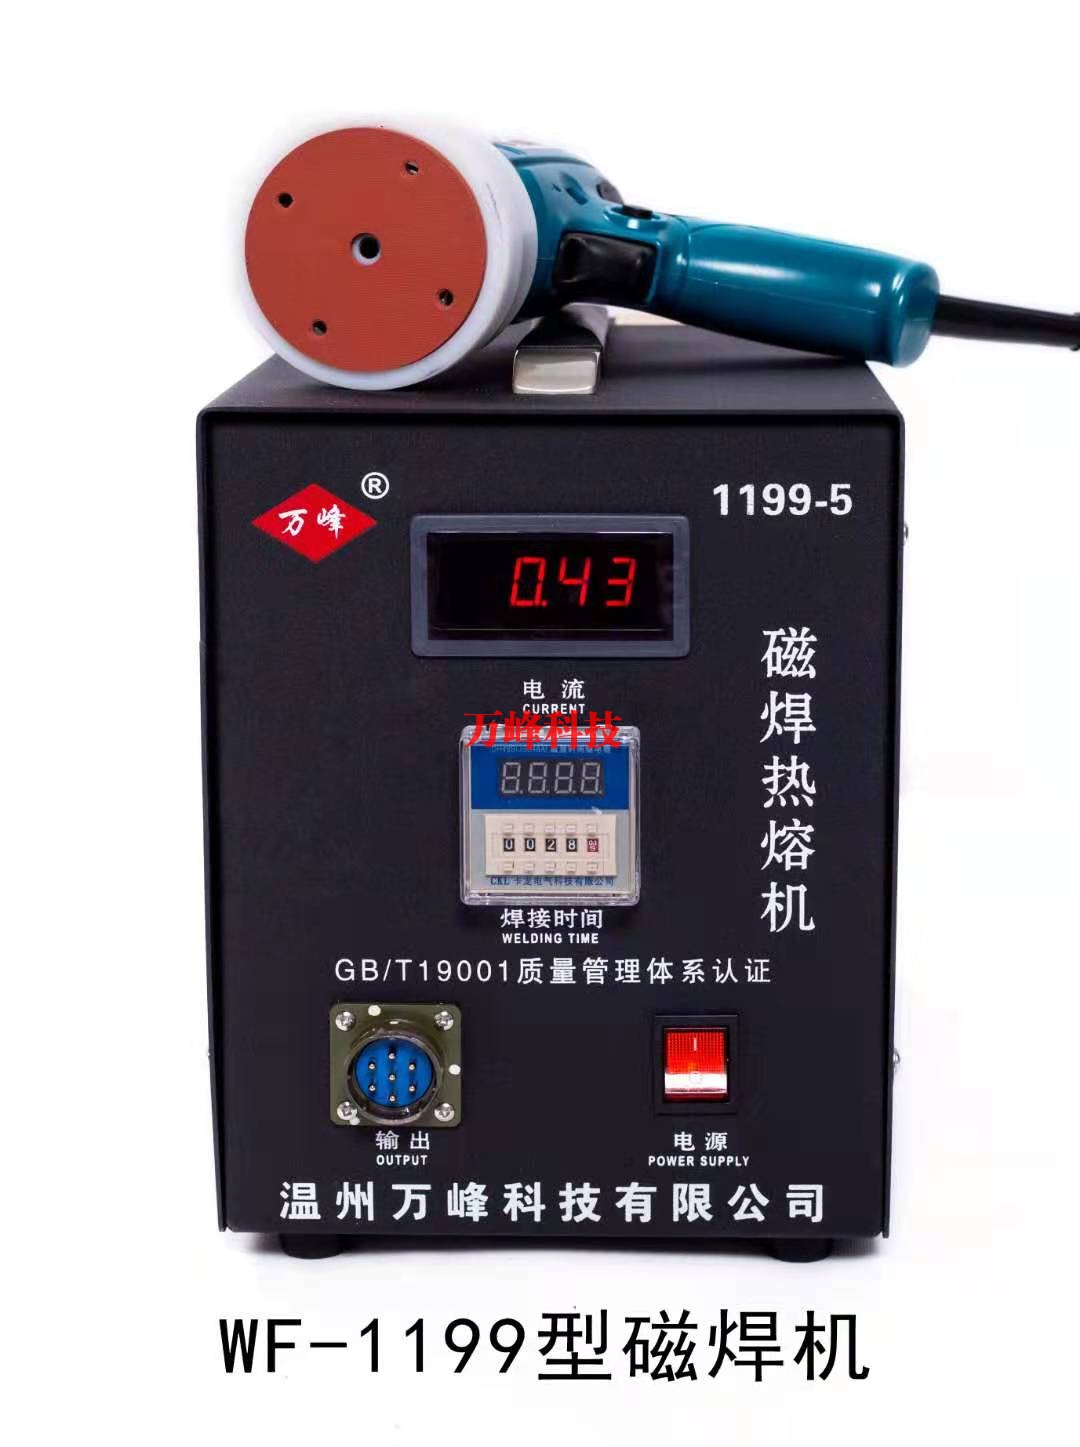 WF-1199型磁焊热熔机